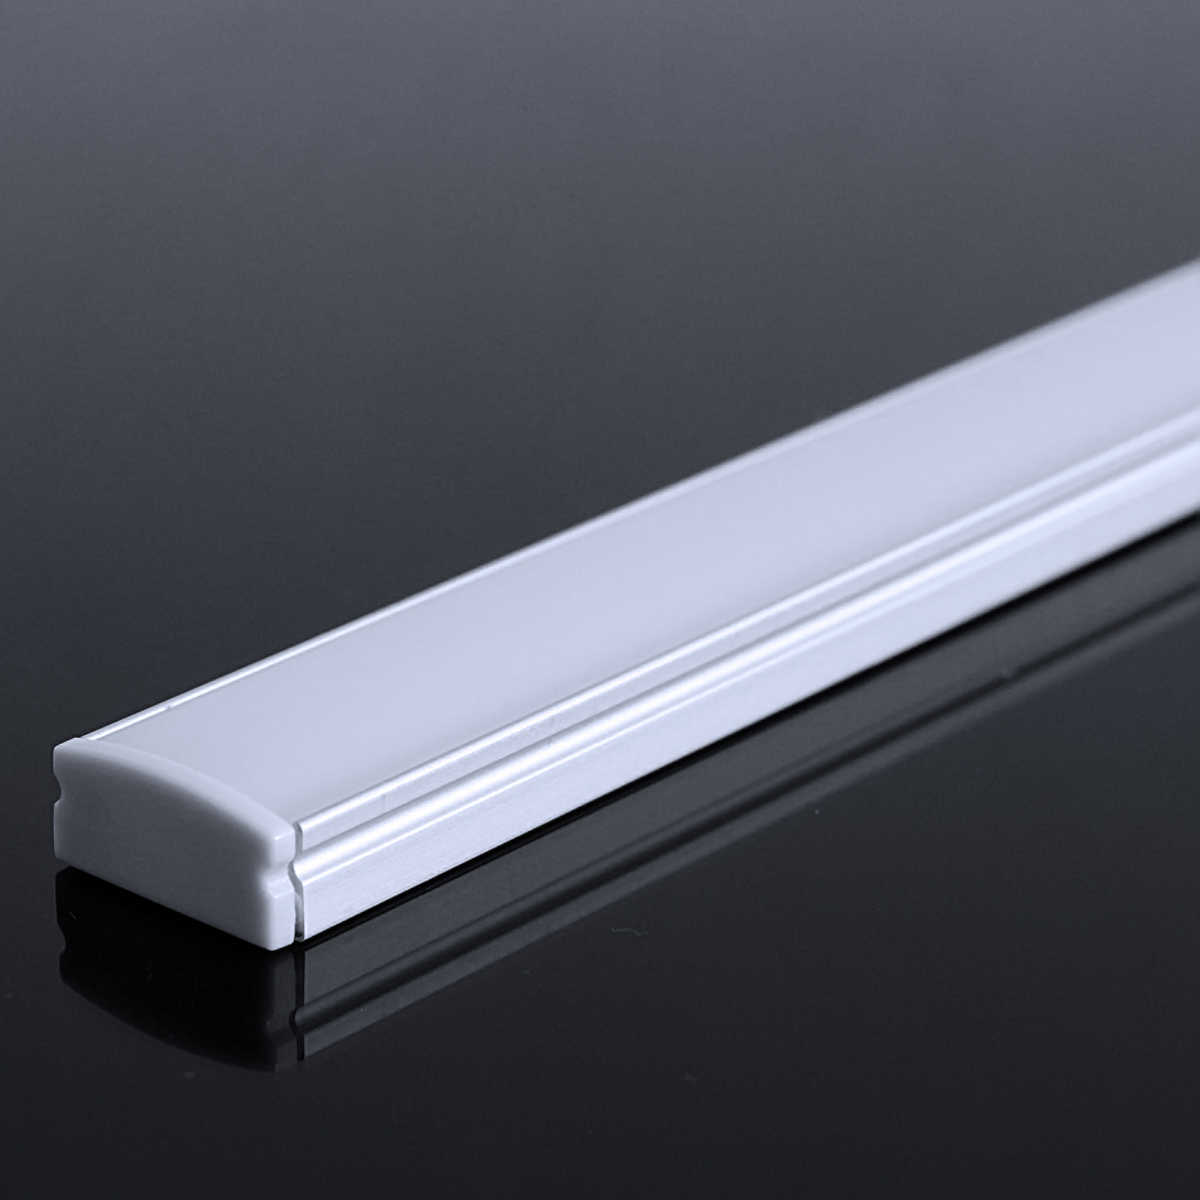 LED Flachprofil "Slim-Line" | Abdeckung diffus | Zuschnitt auf 155cm |